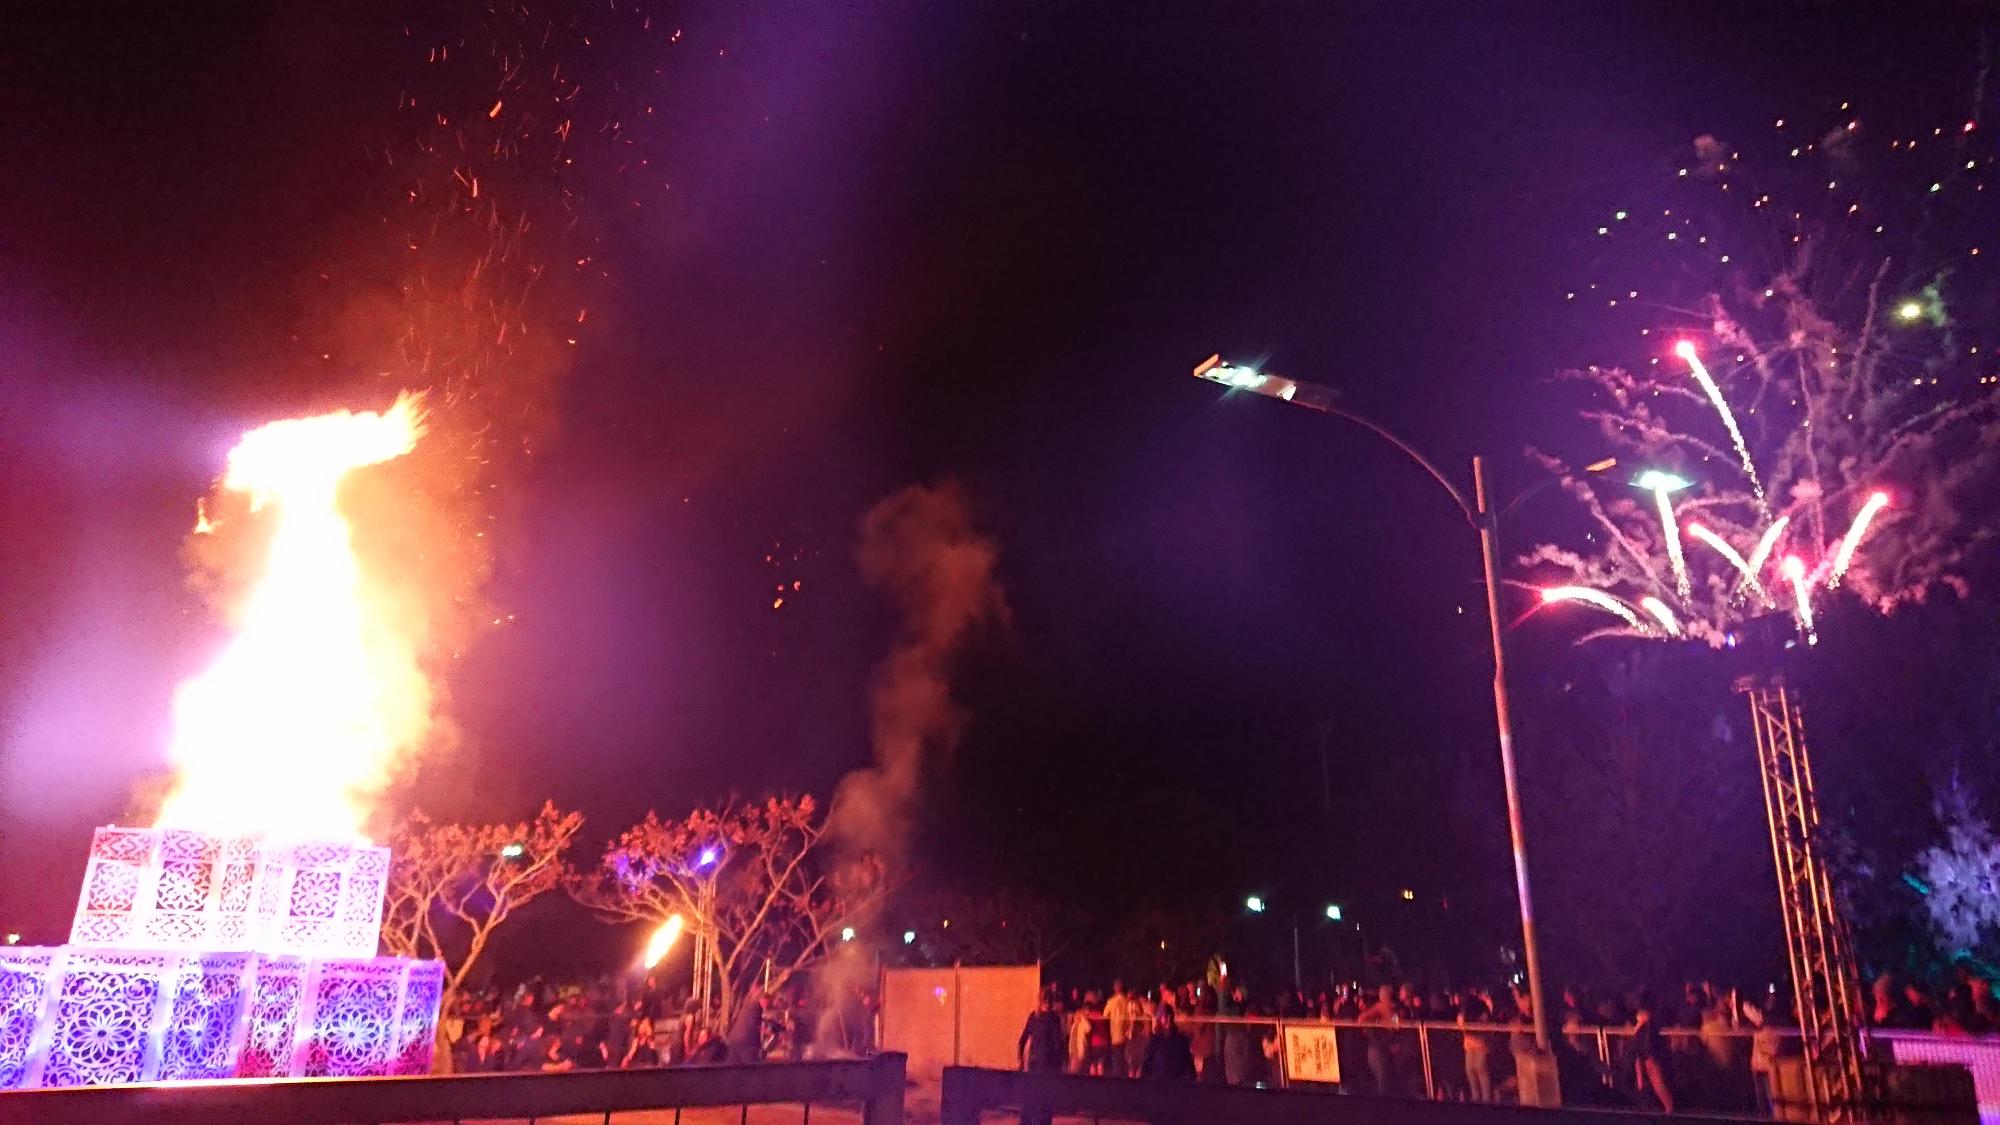 パレードに参加したたくさんの人たちが夜空の中集まって右側の打ち上げ花火を見ている写真